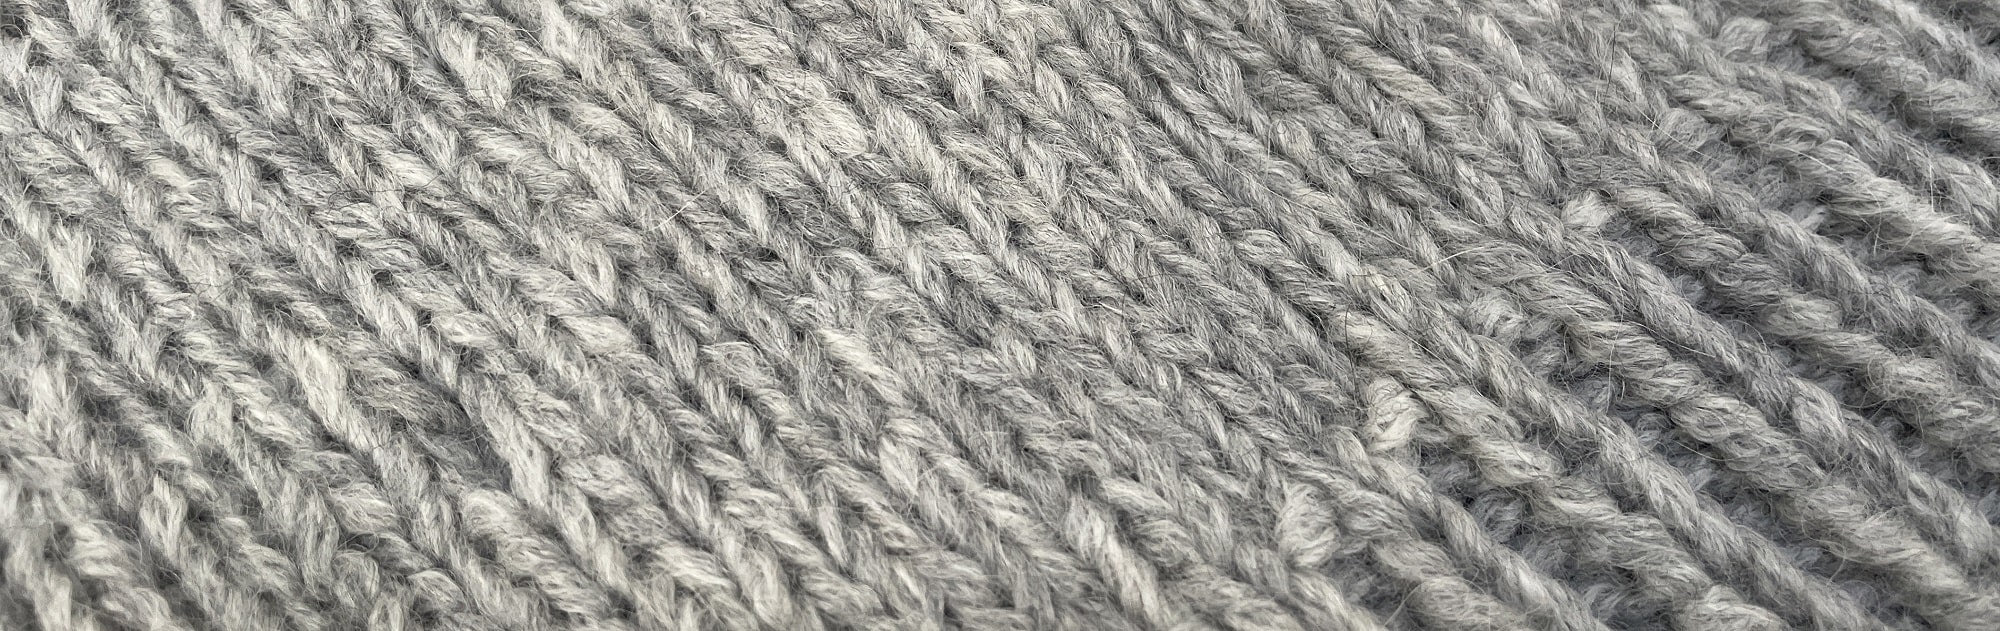 Diagonal Shaded Shawl (Crochet) – Lion Brand Yarn